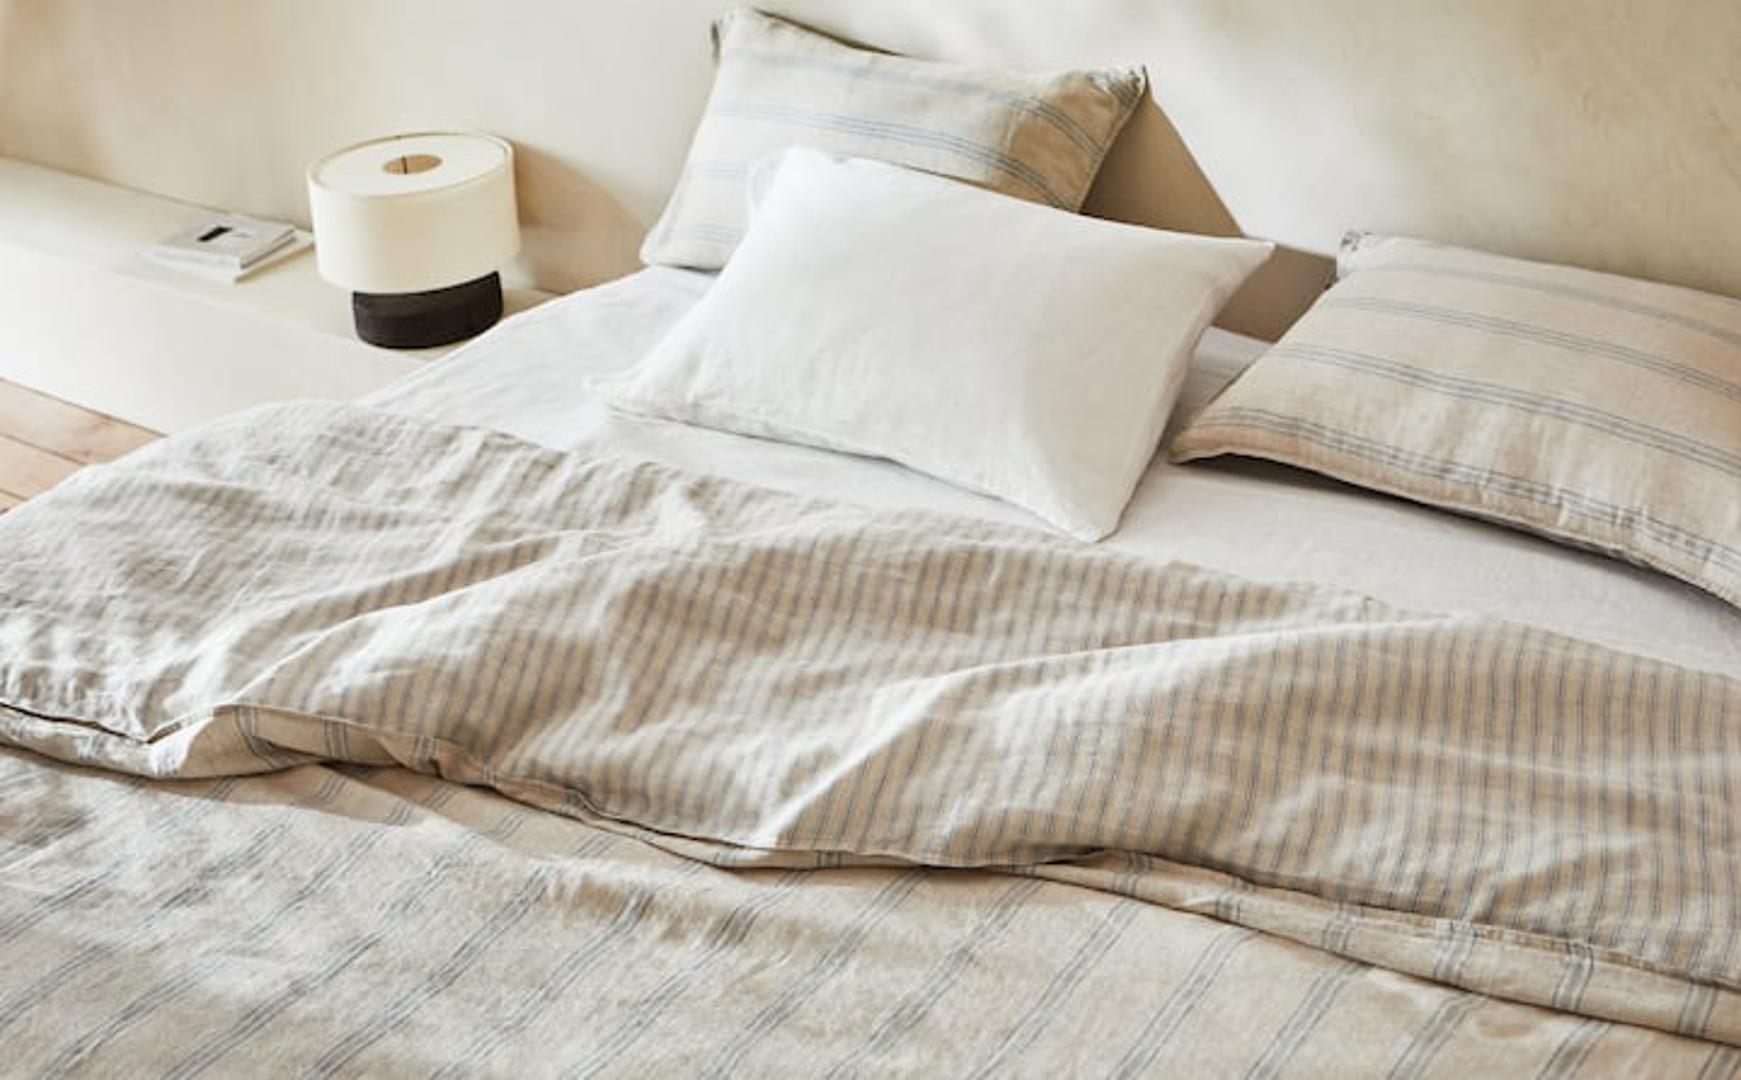 Više jastuka stvorit će luksuzni dojam u spavaćoj sobi